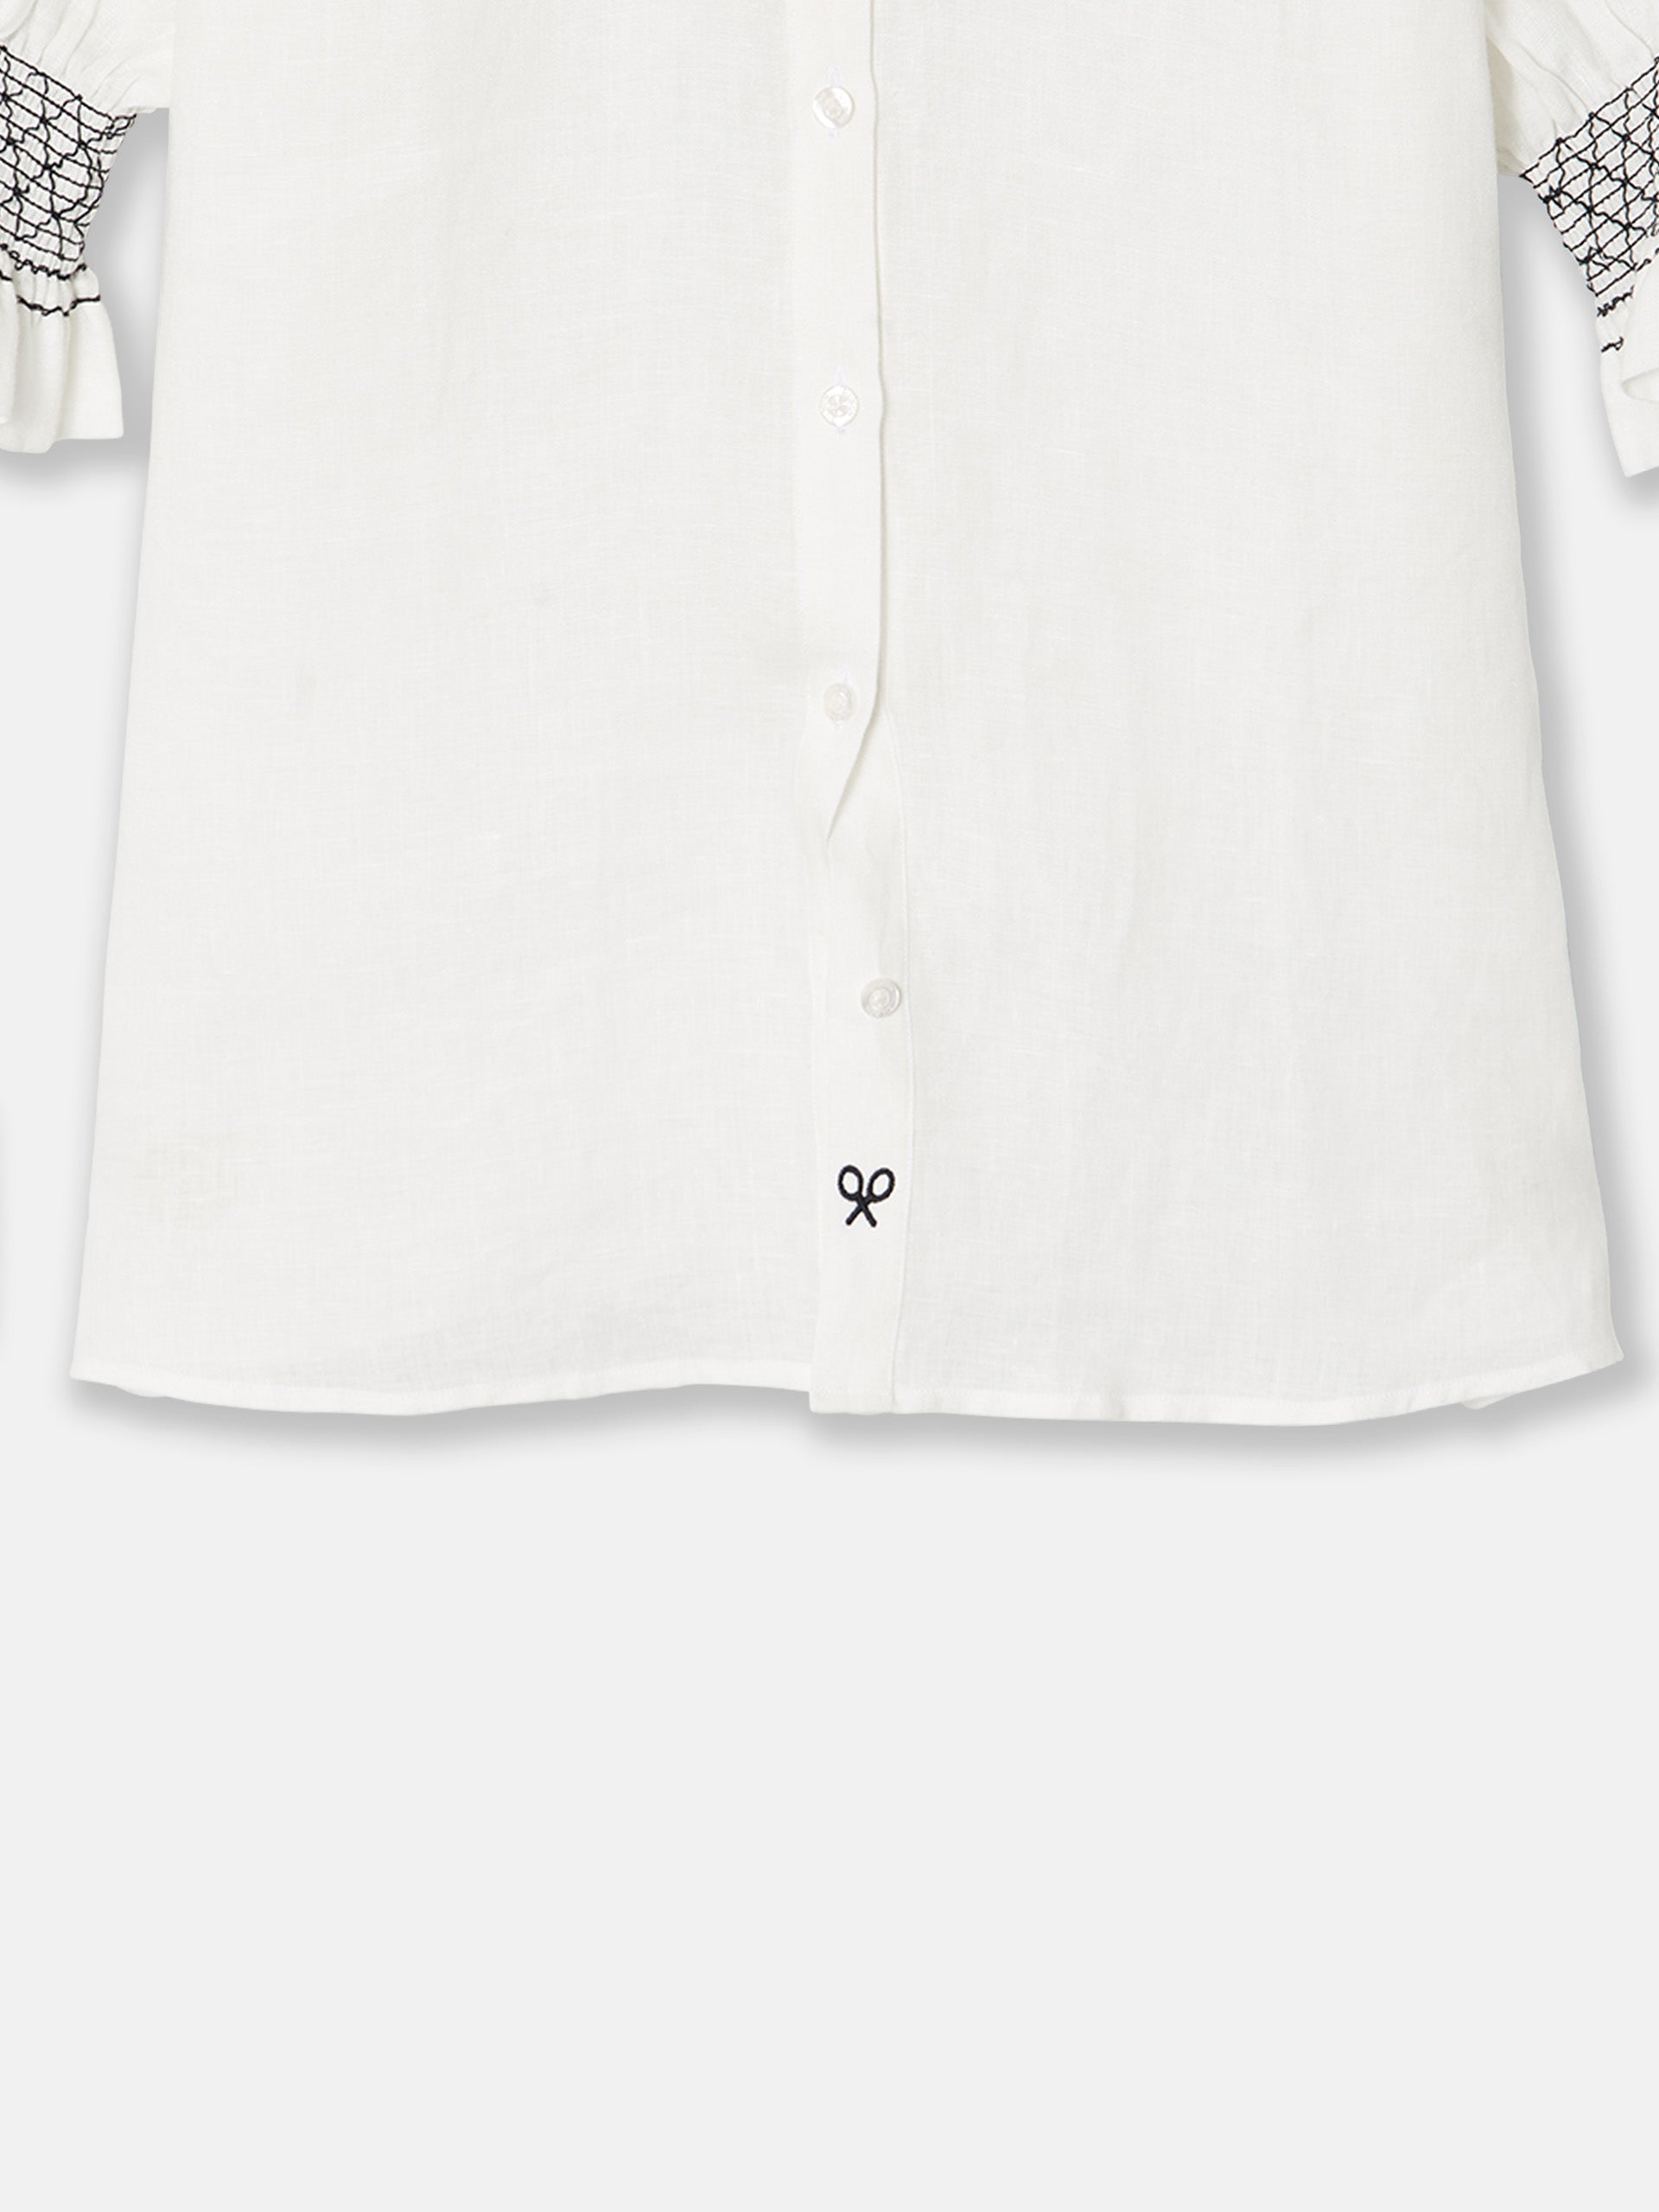 Camisa frunces lino blanca